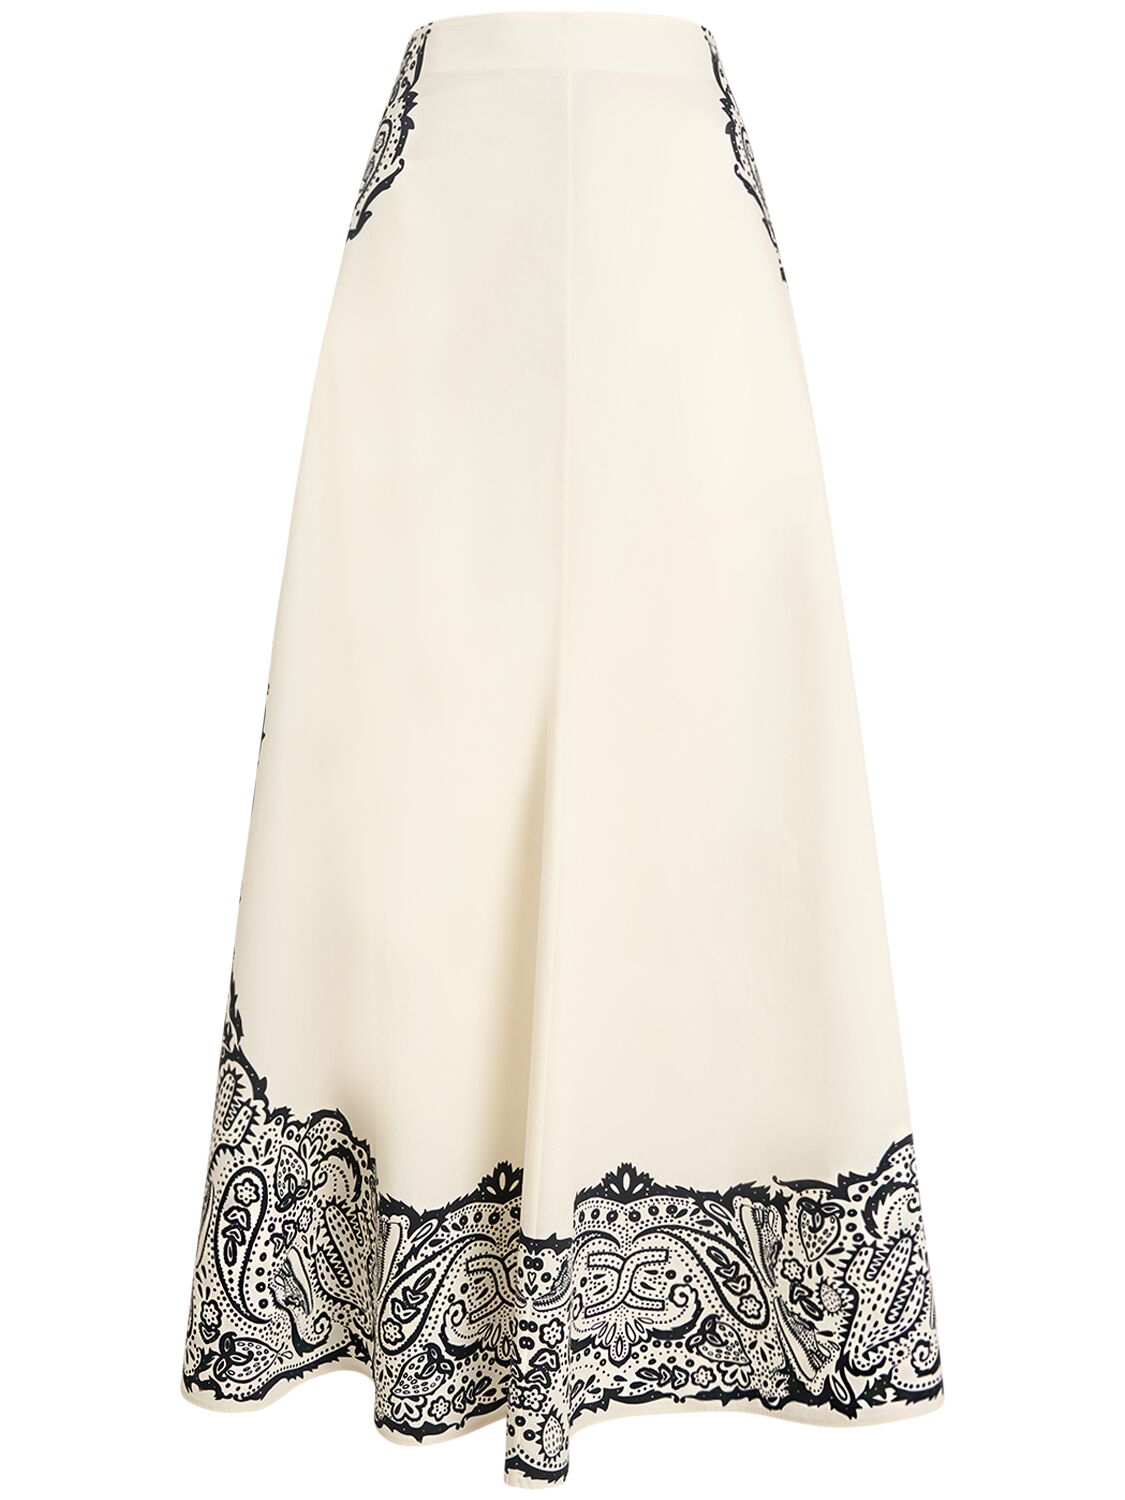 CHLOÉ Printed Cotton Poplin Long Skirt